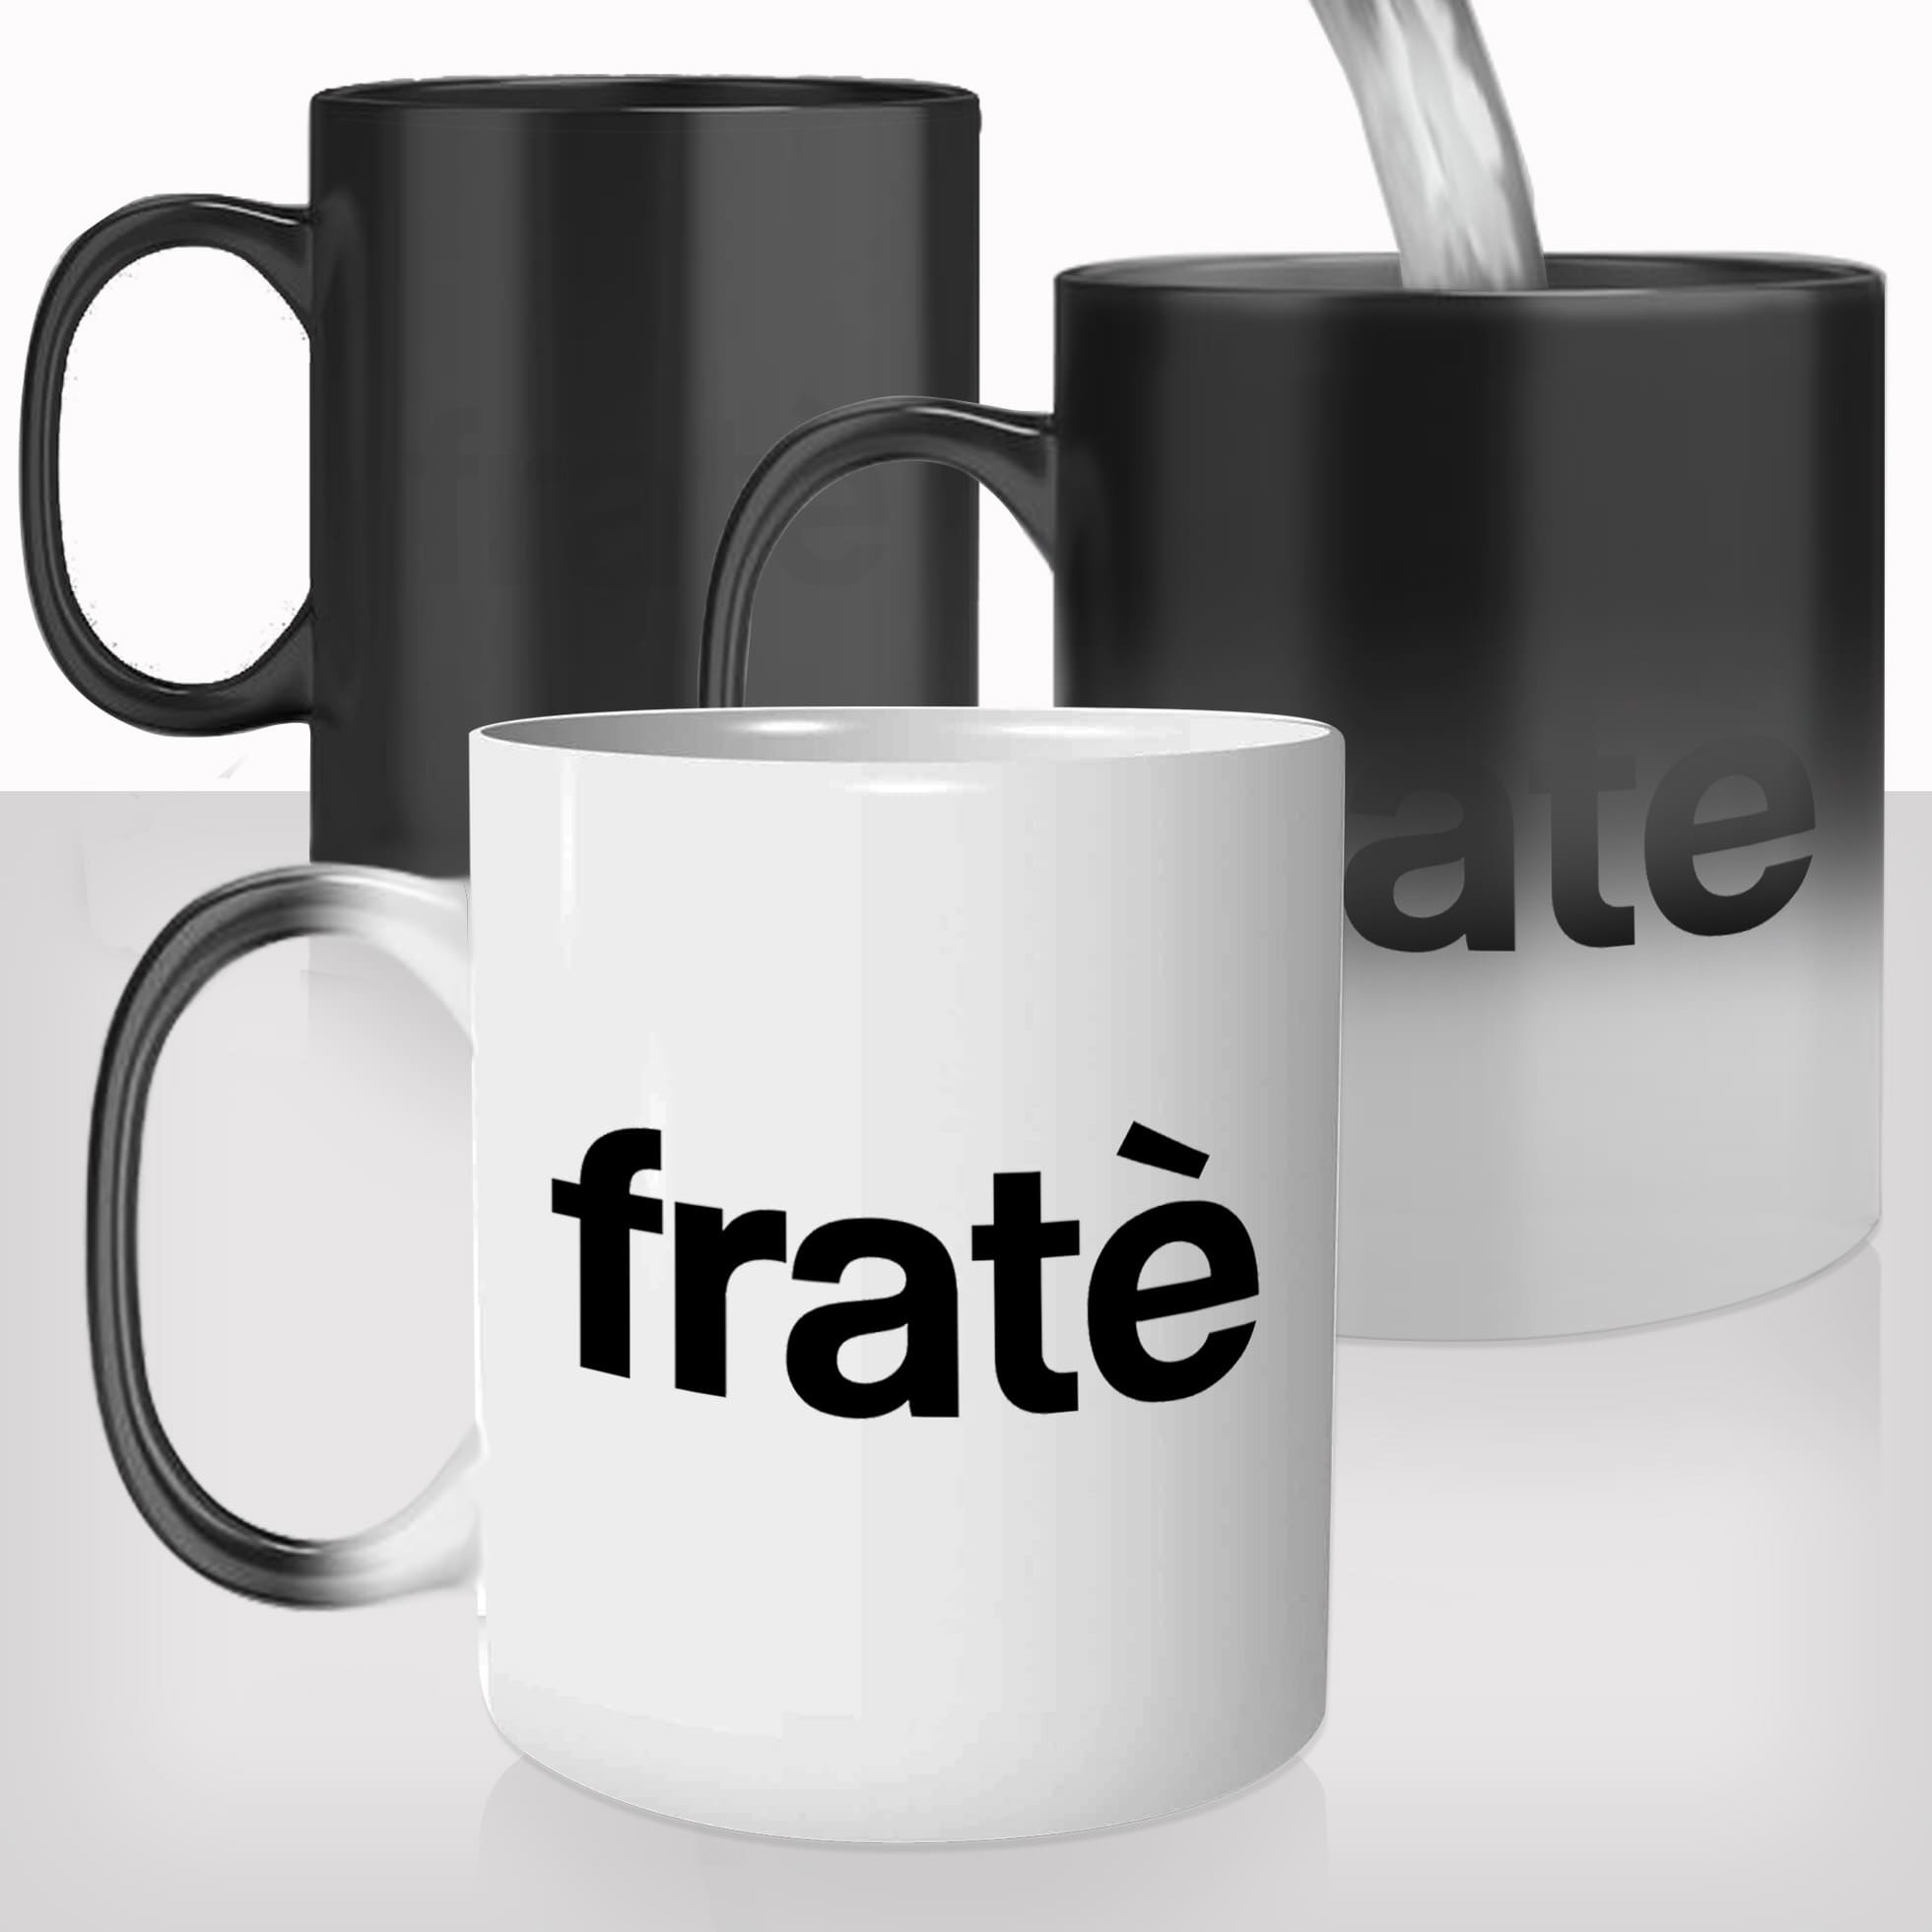 mug-magique-tasse-magic-thermo-reactif-chauffant-fratè-frade-frère-hommes-pote-corse-corsica-photo-france-personnalisé-cadeau-original